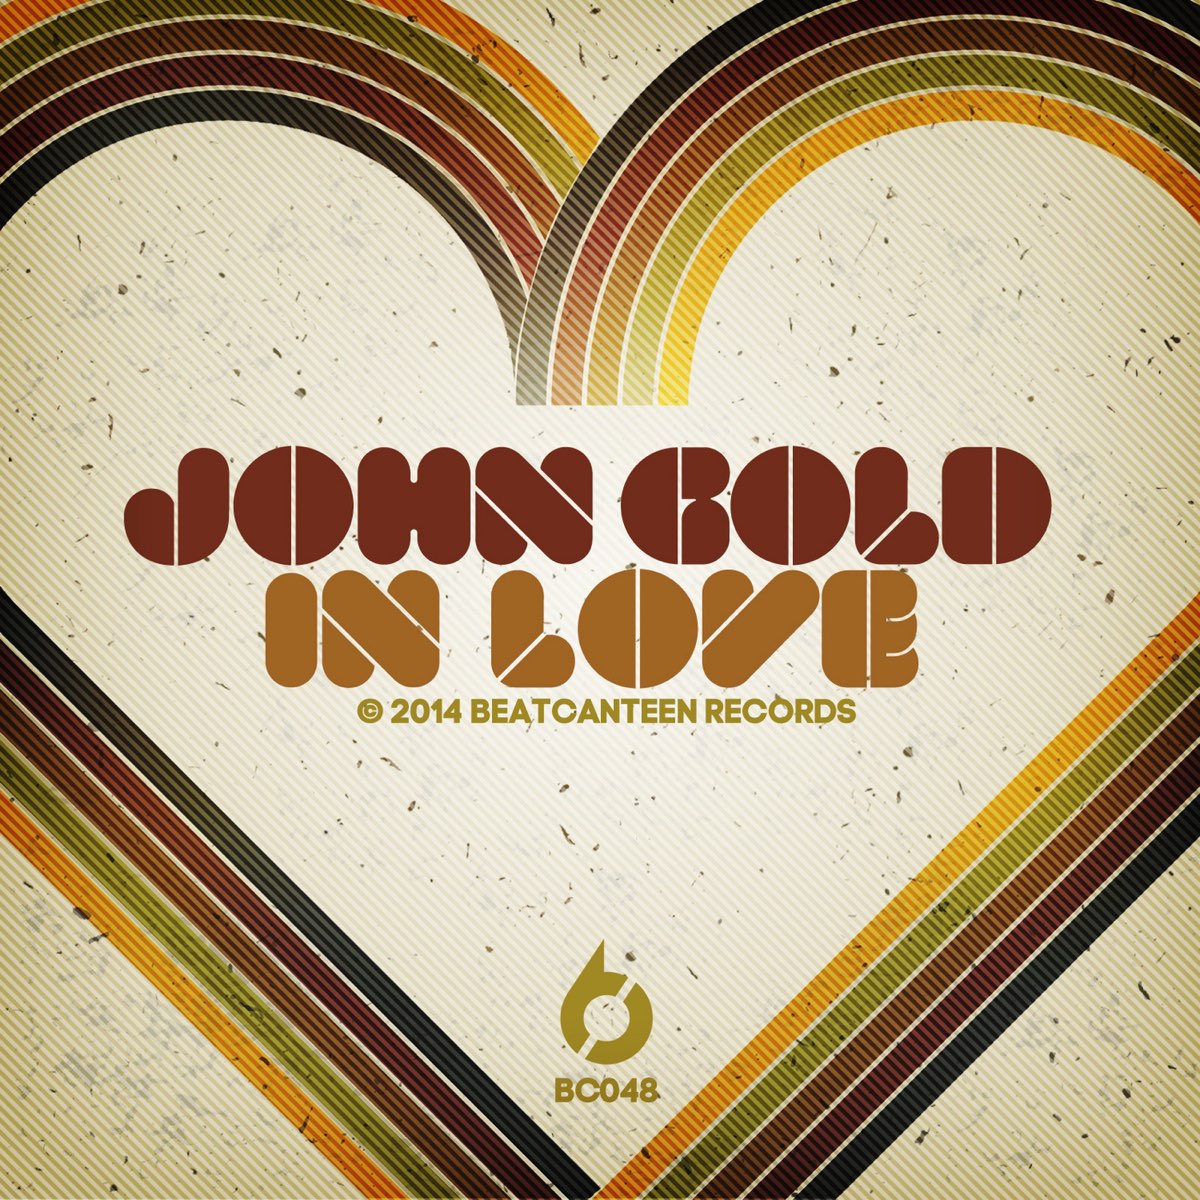 Джон лов. Lovely John. John Love kaglami. Lover over Gold album. The kind of Love - Single.